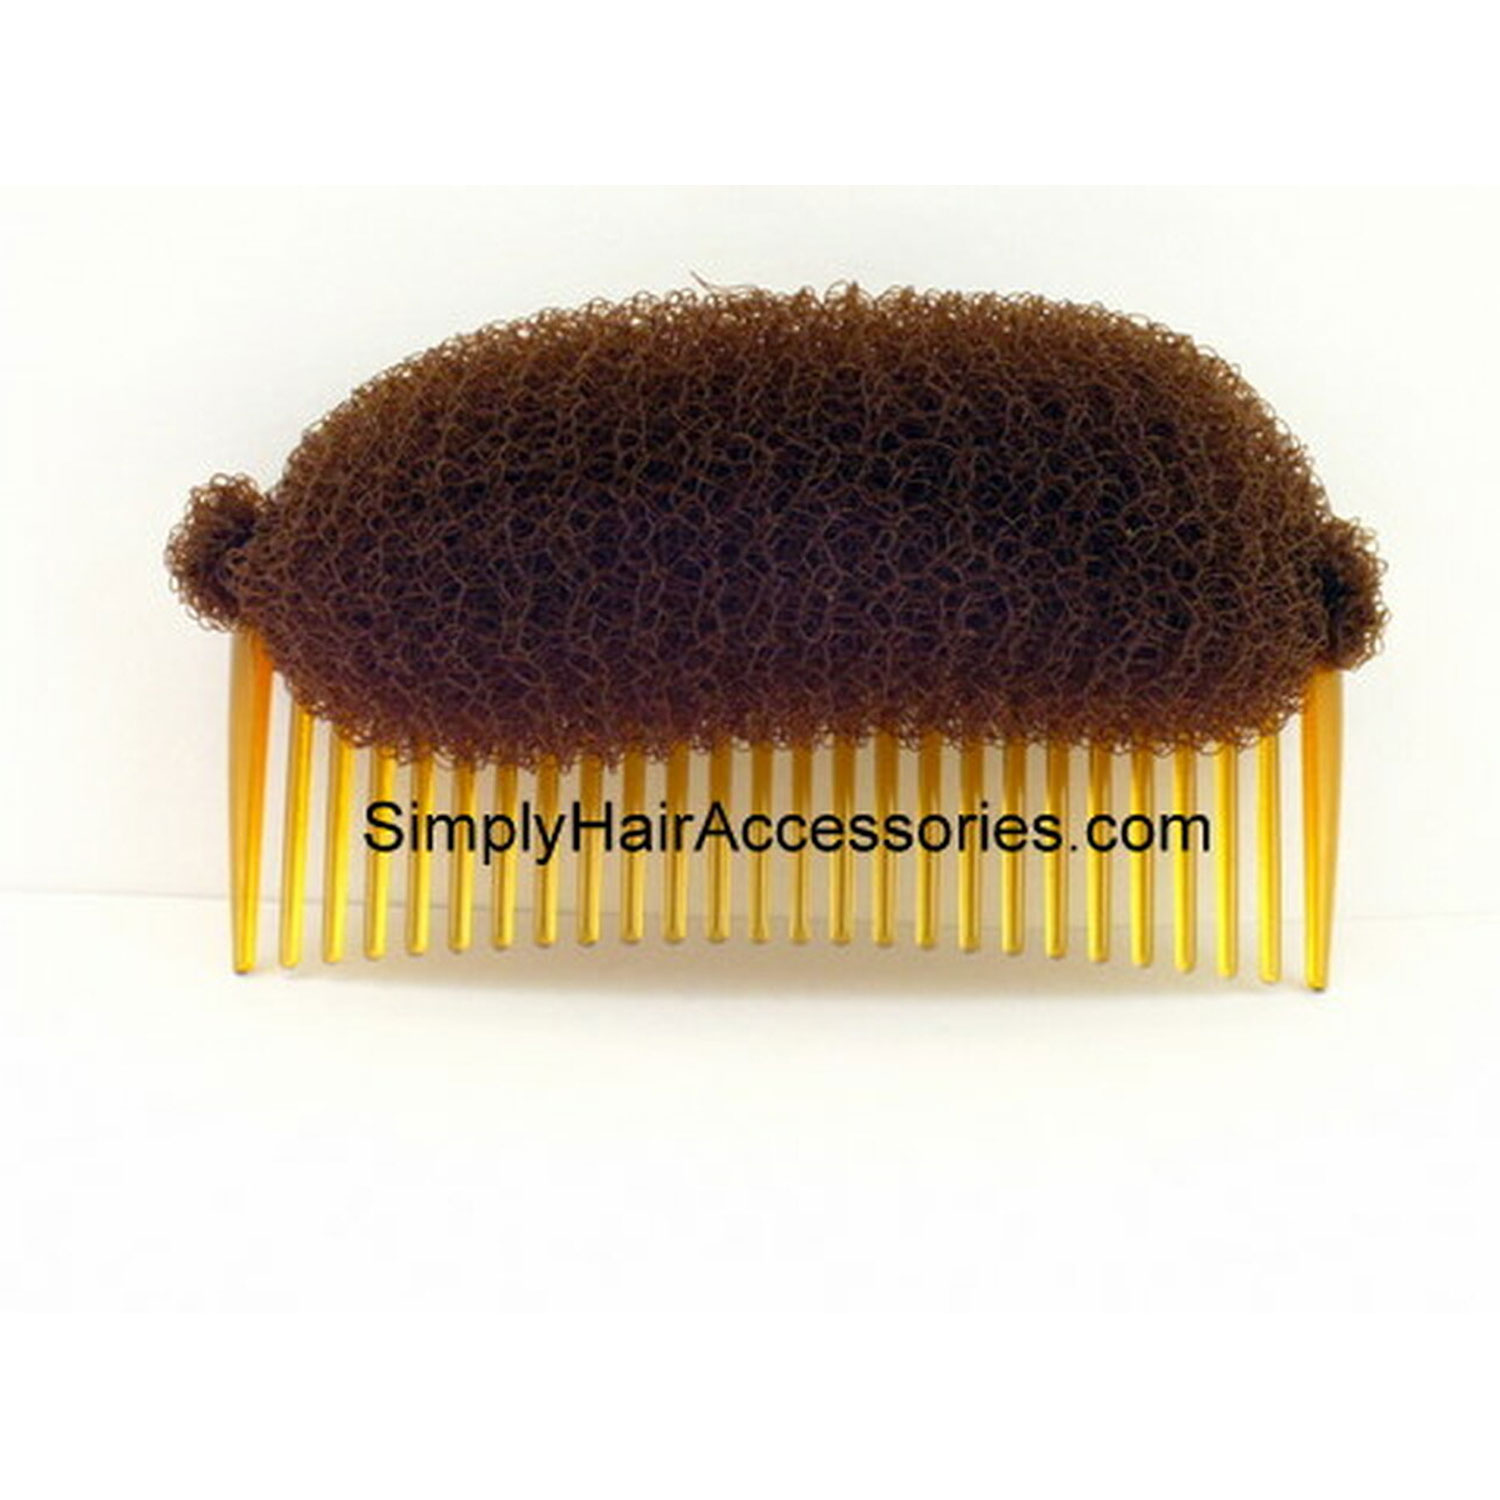 Pompadour Comb Kit